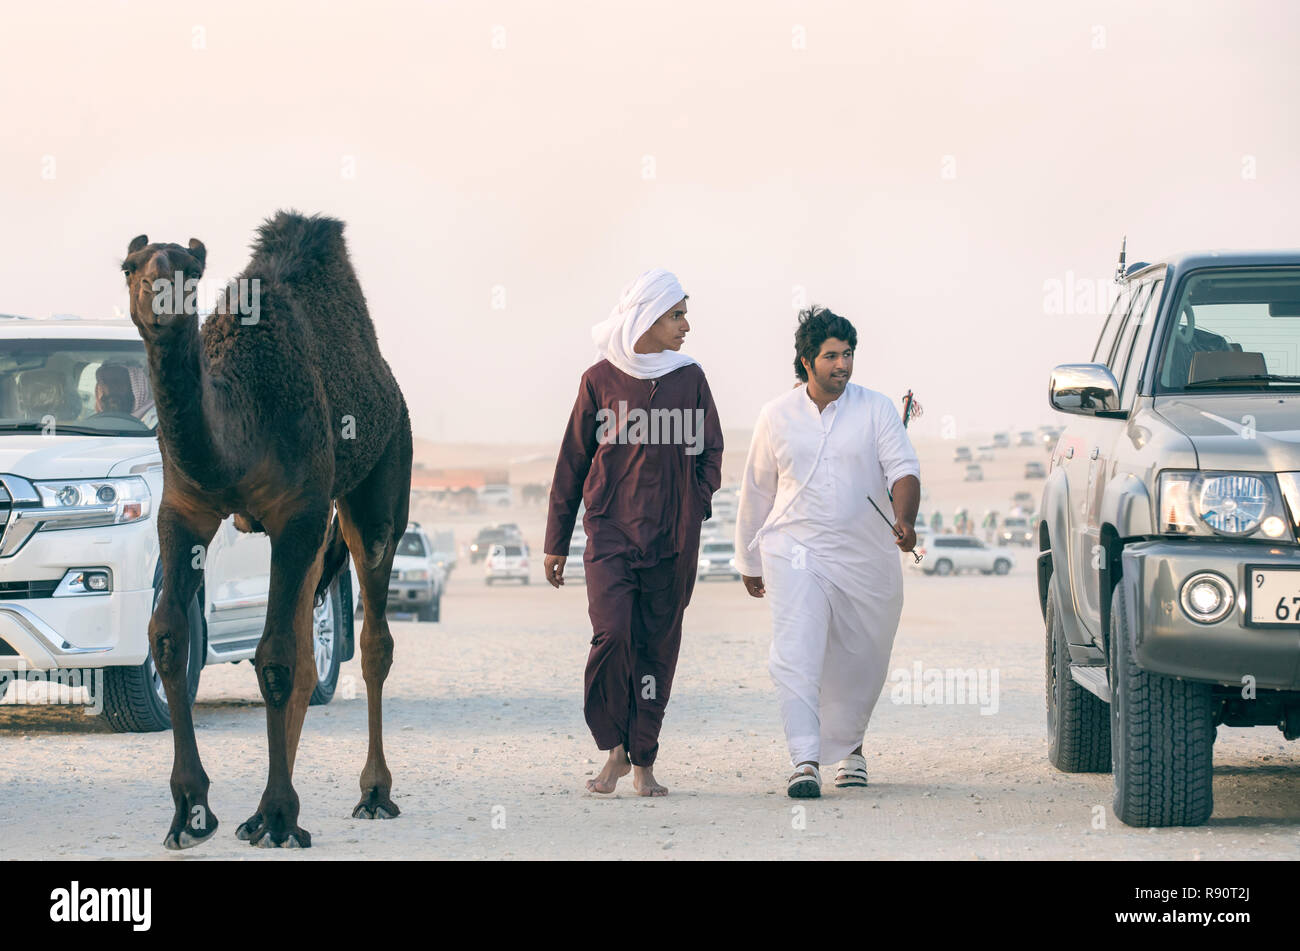 Madinat Zayed, Vereinigte Arabische Emirate, am 15. Dezember, 2017: arabische Mann mit seinem Kamel an der Millionen Straße, wo Kamele gekauft und verkauft. Stockfoto